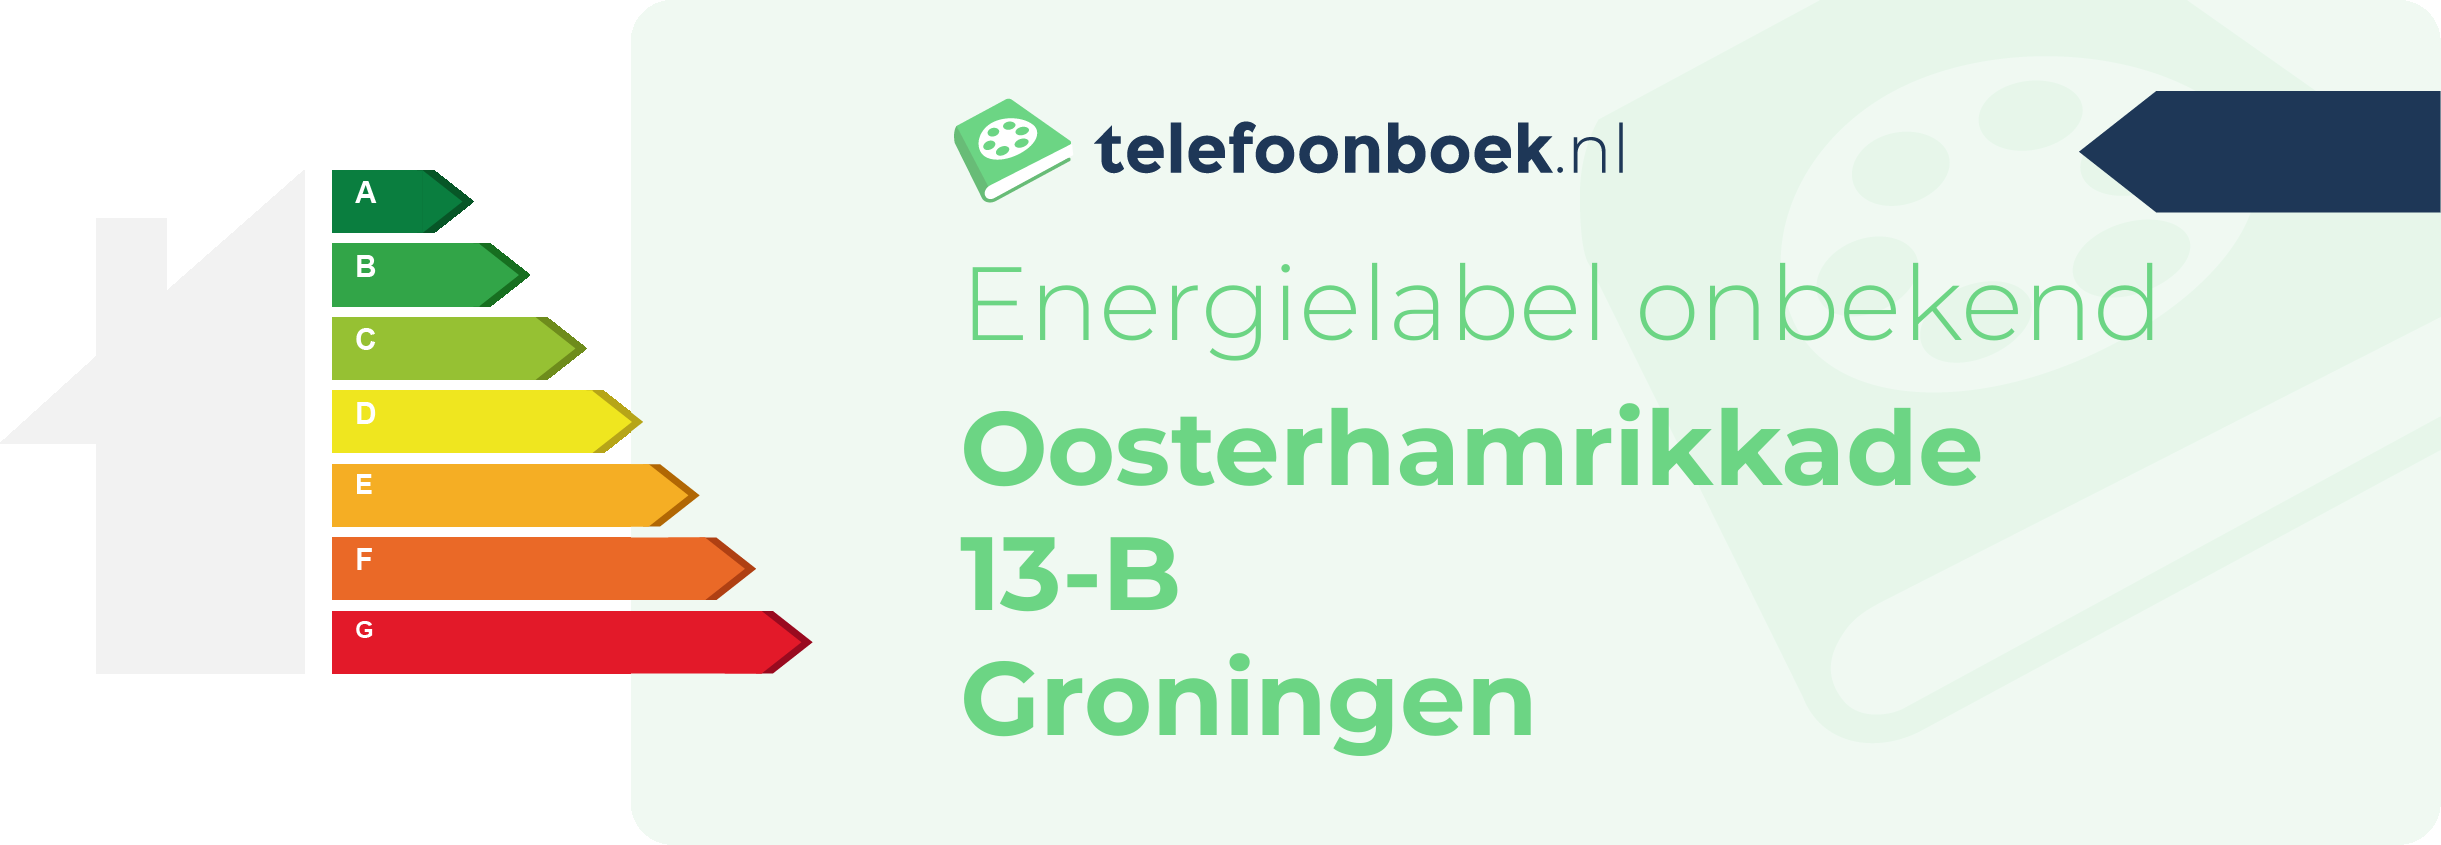 Energielabel Oosterhamrikkade 13-B Groningen